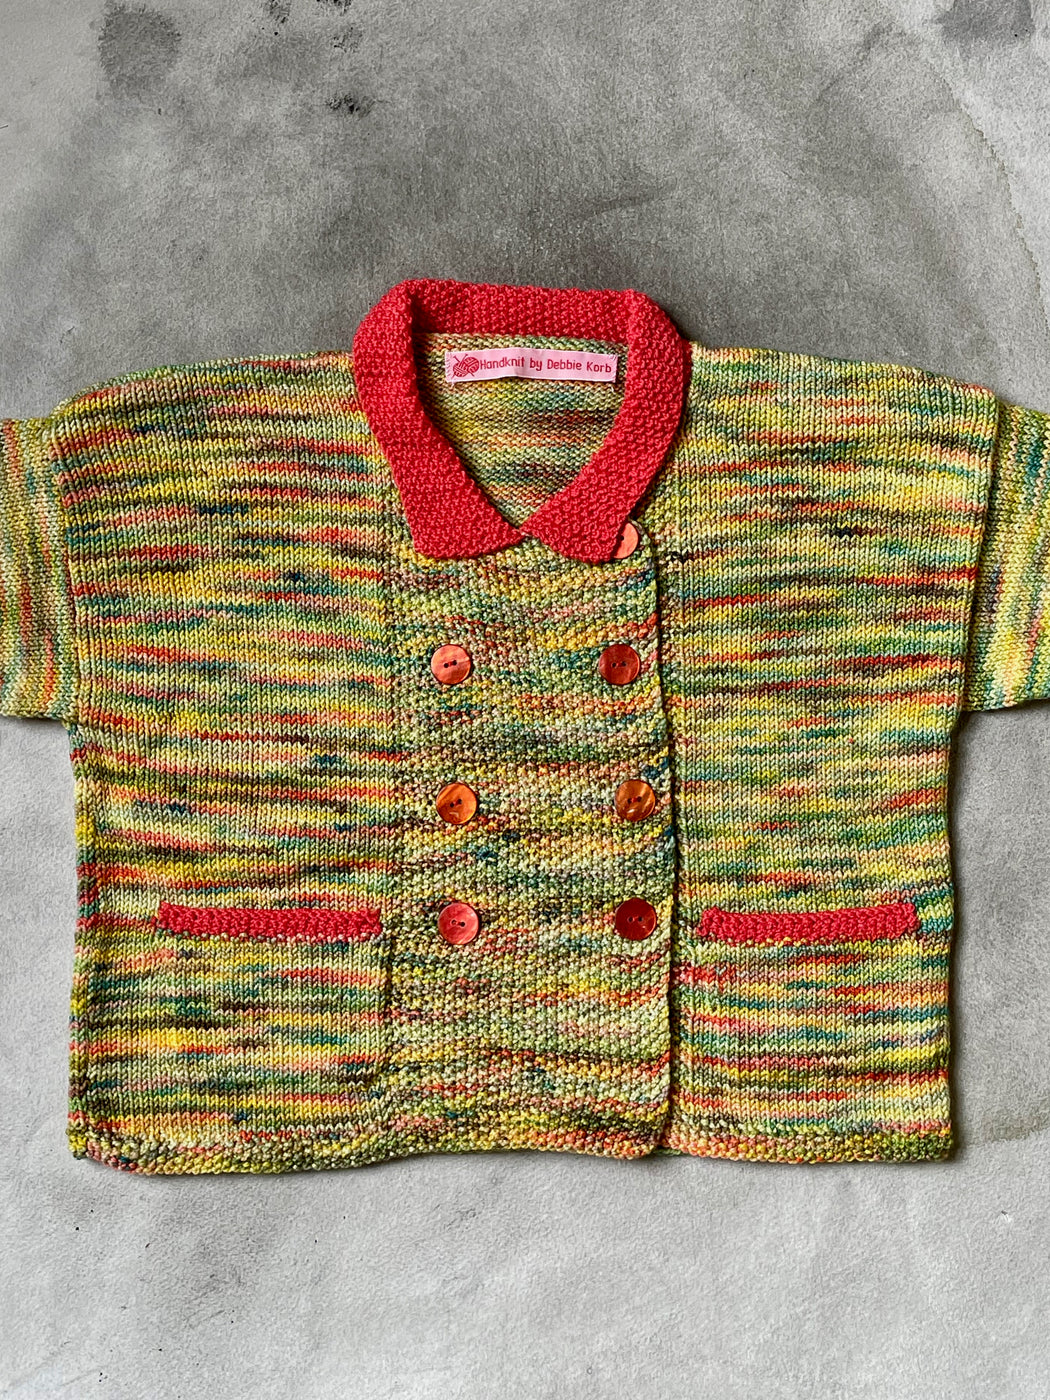 Aunt Debbie's Hand-Knit Children's Sweater (3 - 4 years)